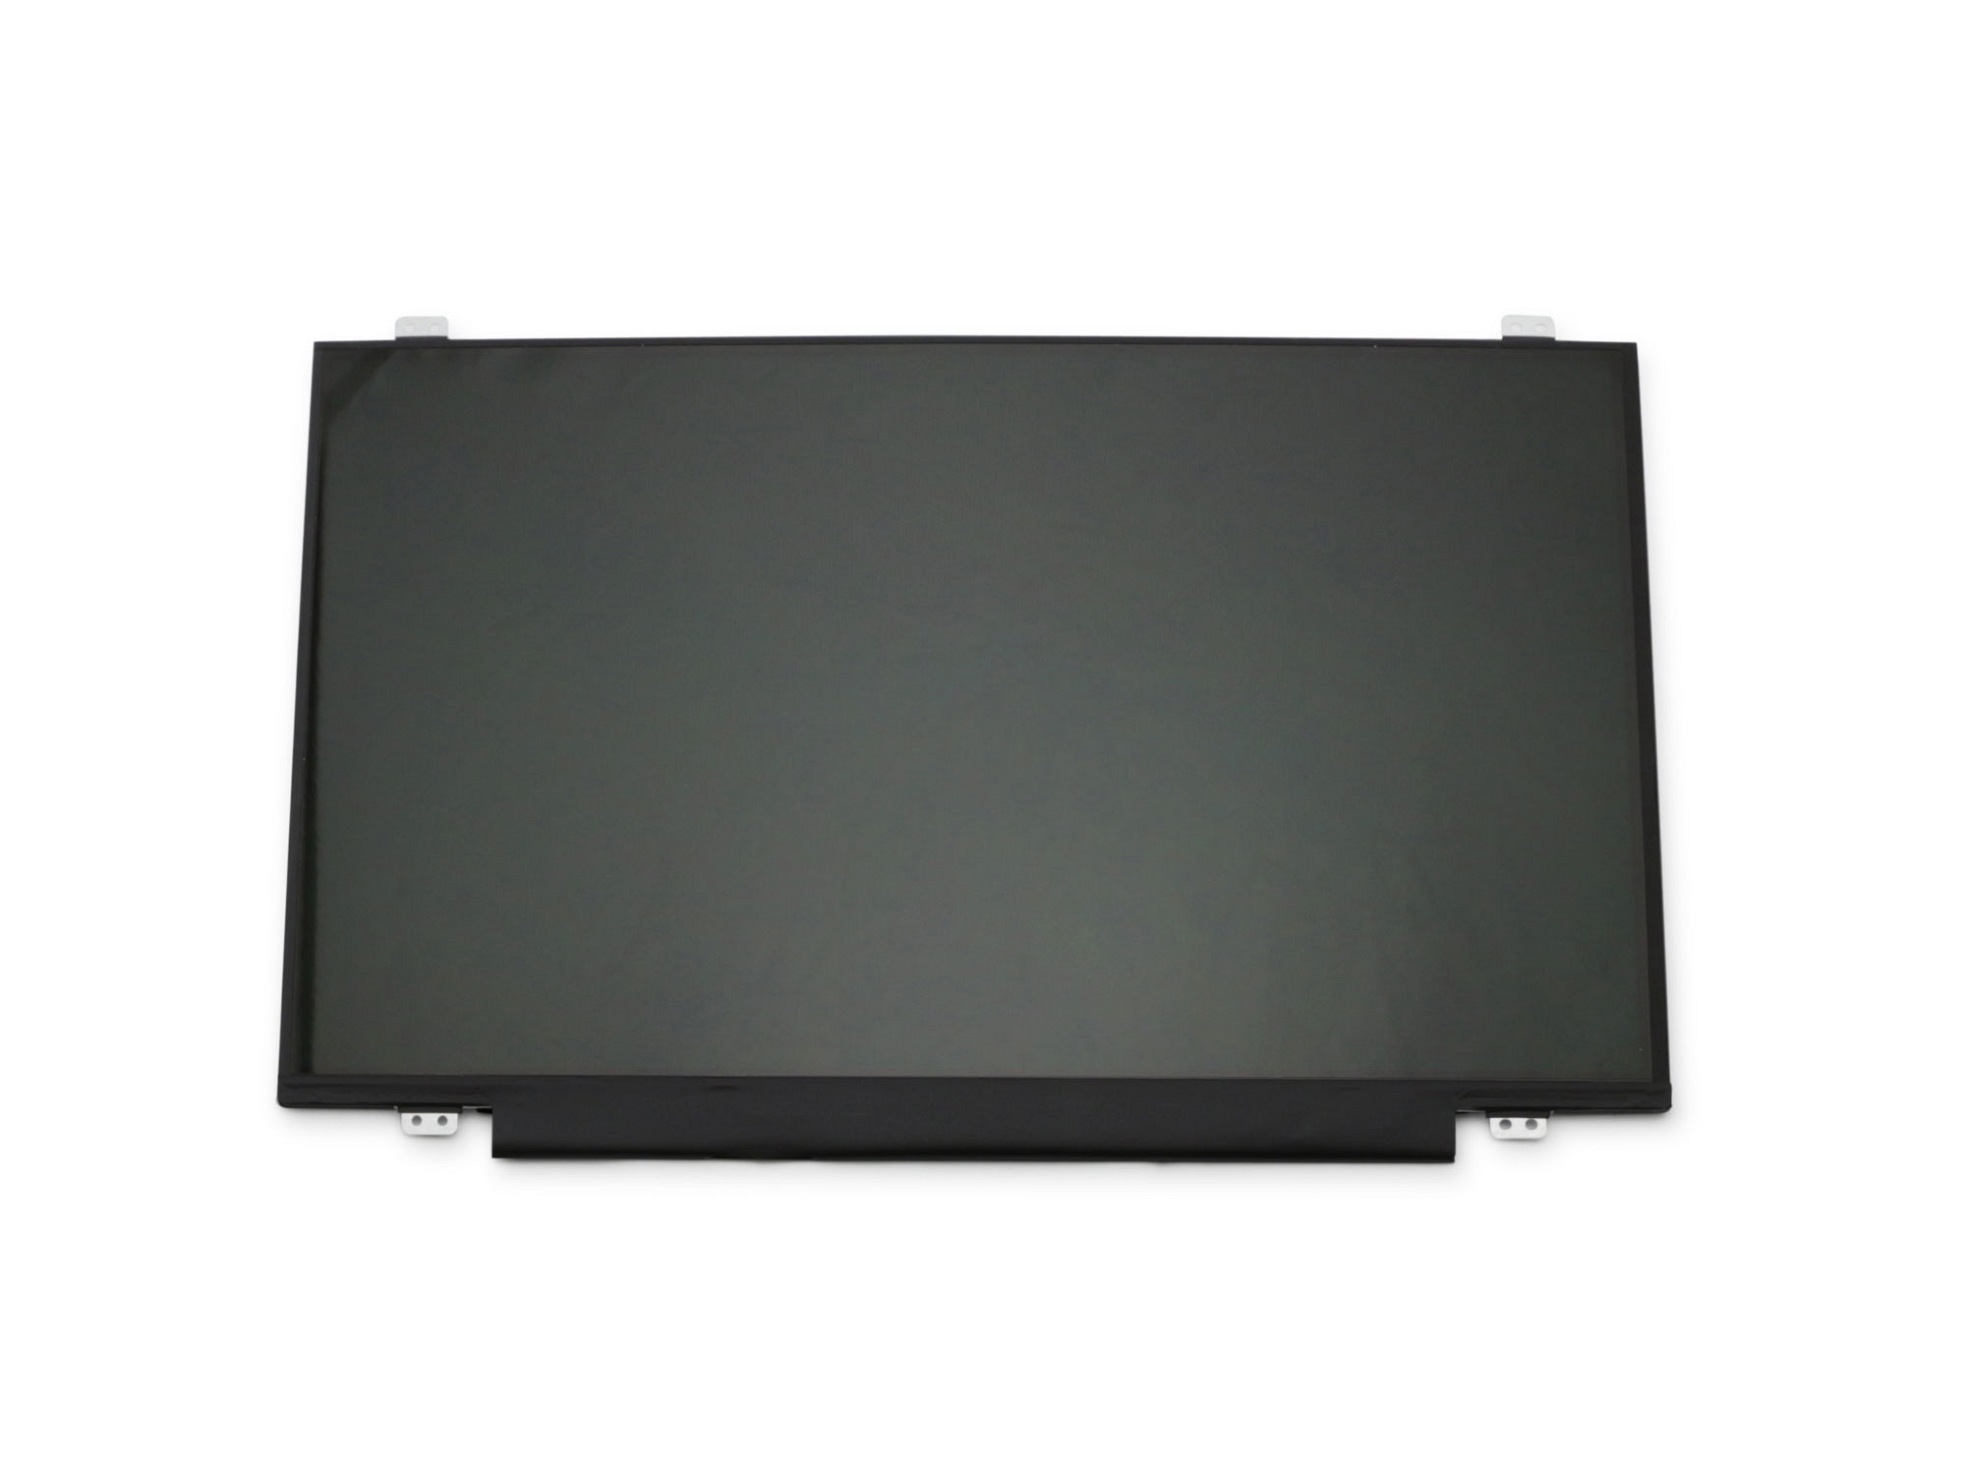 LG LP140WH8-TPL1 Display (1366x768) glänzend slimline